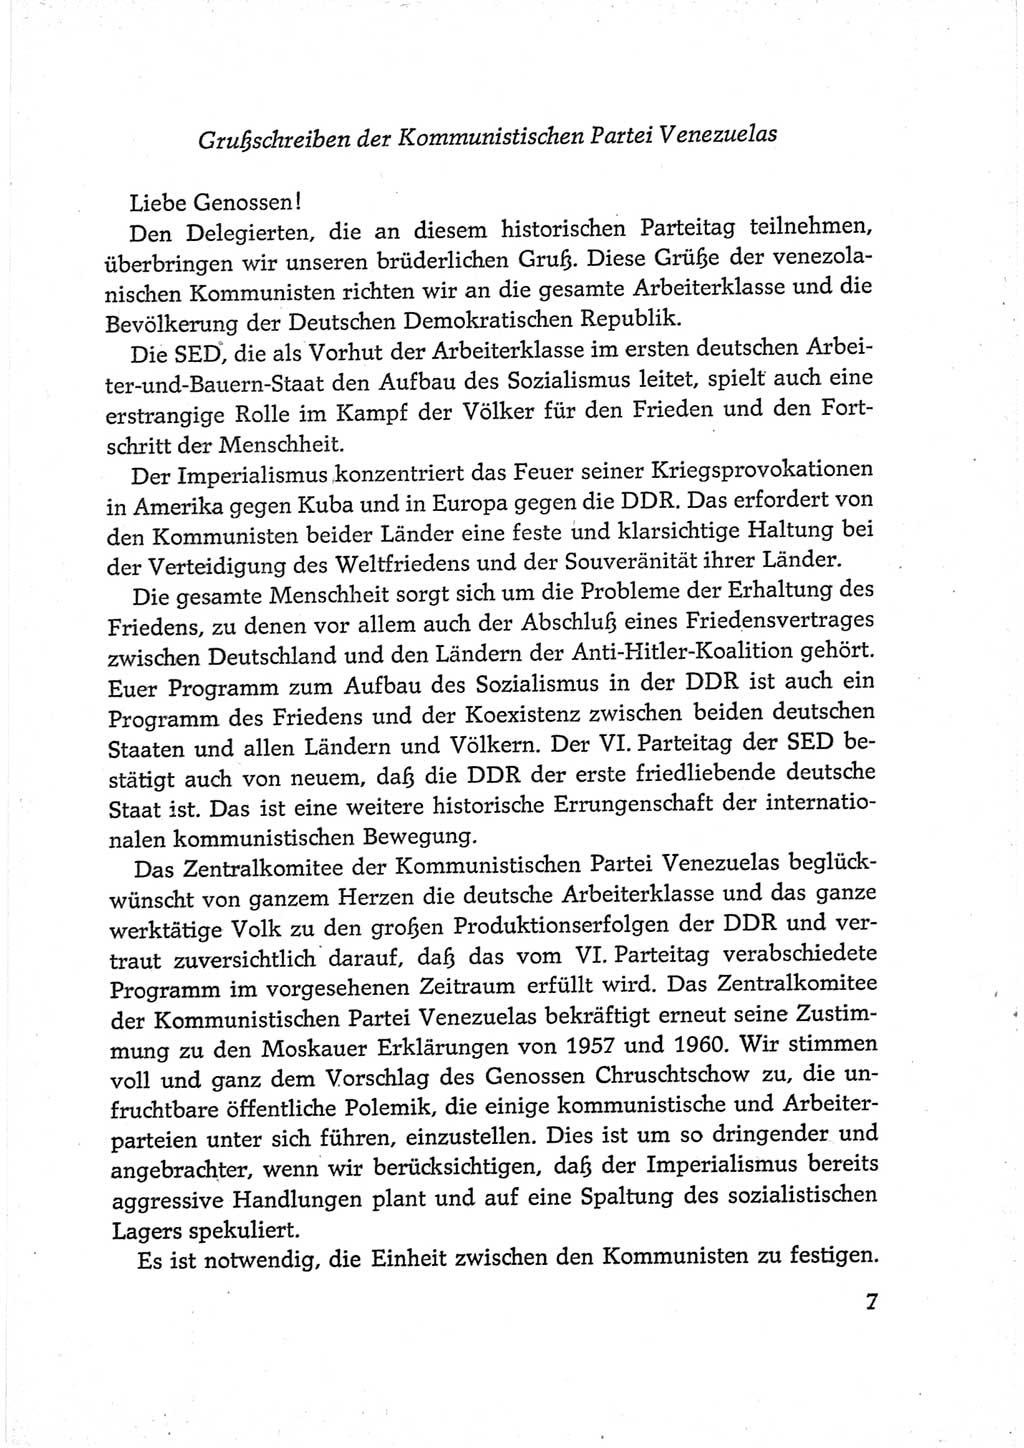 Protokoll der Verhandlungen des Ⅵ. Parteitages der Sozialistischen Einheitspartei Deutschlands (SED) [Deutsche Demokratische Republik (DDR)] 1963, Band Ⅲ, Seite 7 (Prot. Verh. Ⅵ. PT SED DDR 1963, Bd. Ⅲ, S. 7)